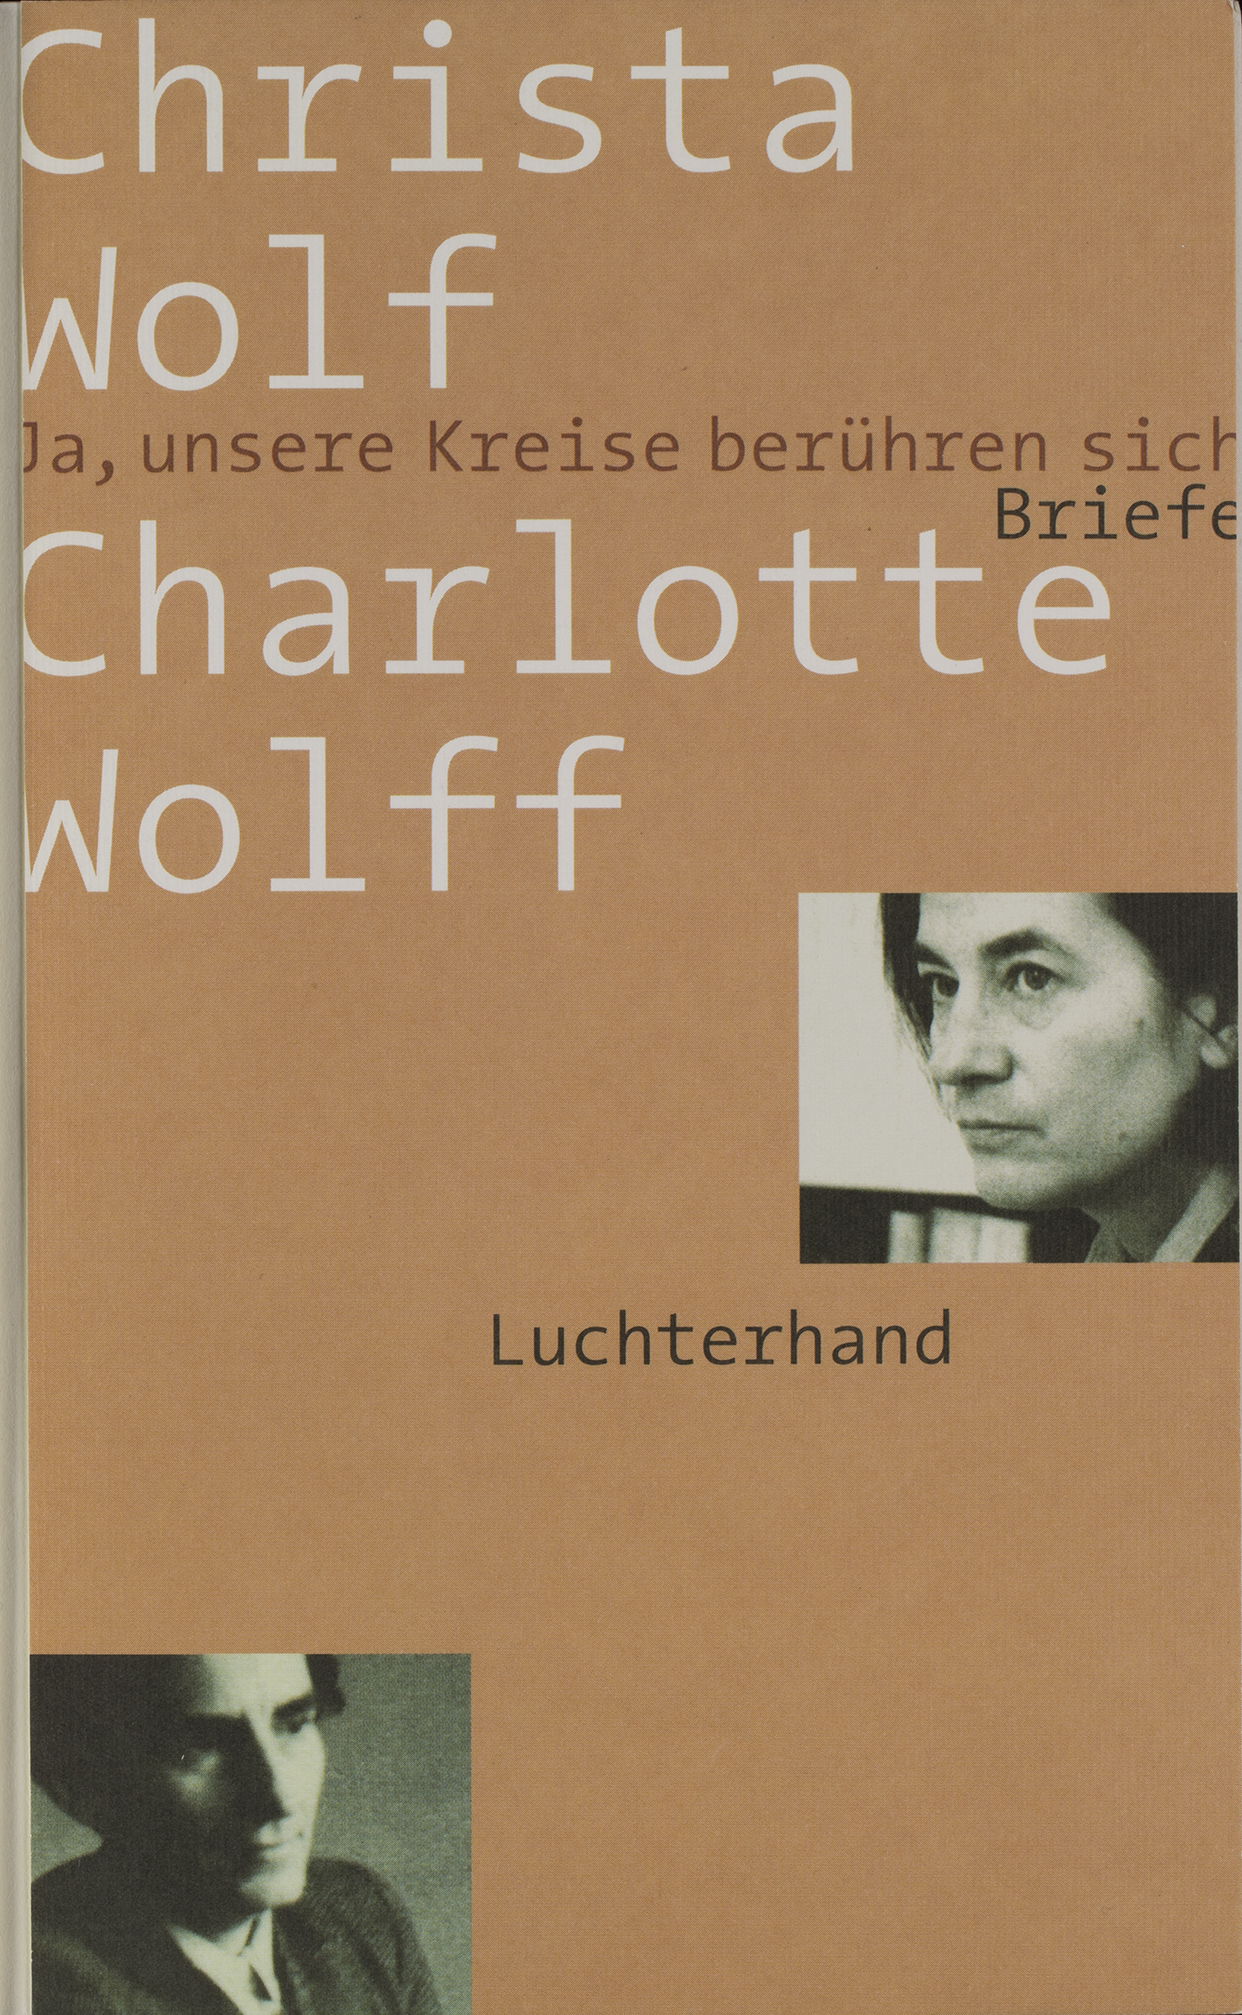 Christa Wolf und Charlotte Wolff. Ja, unsere Kreise berühren sich. Briefe. München: Luchterhand, 2004. Signatur: 1 A 541513